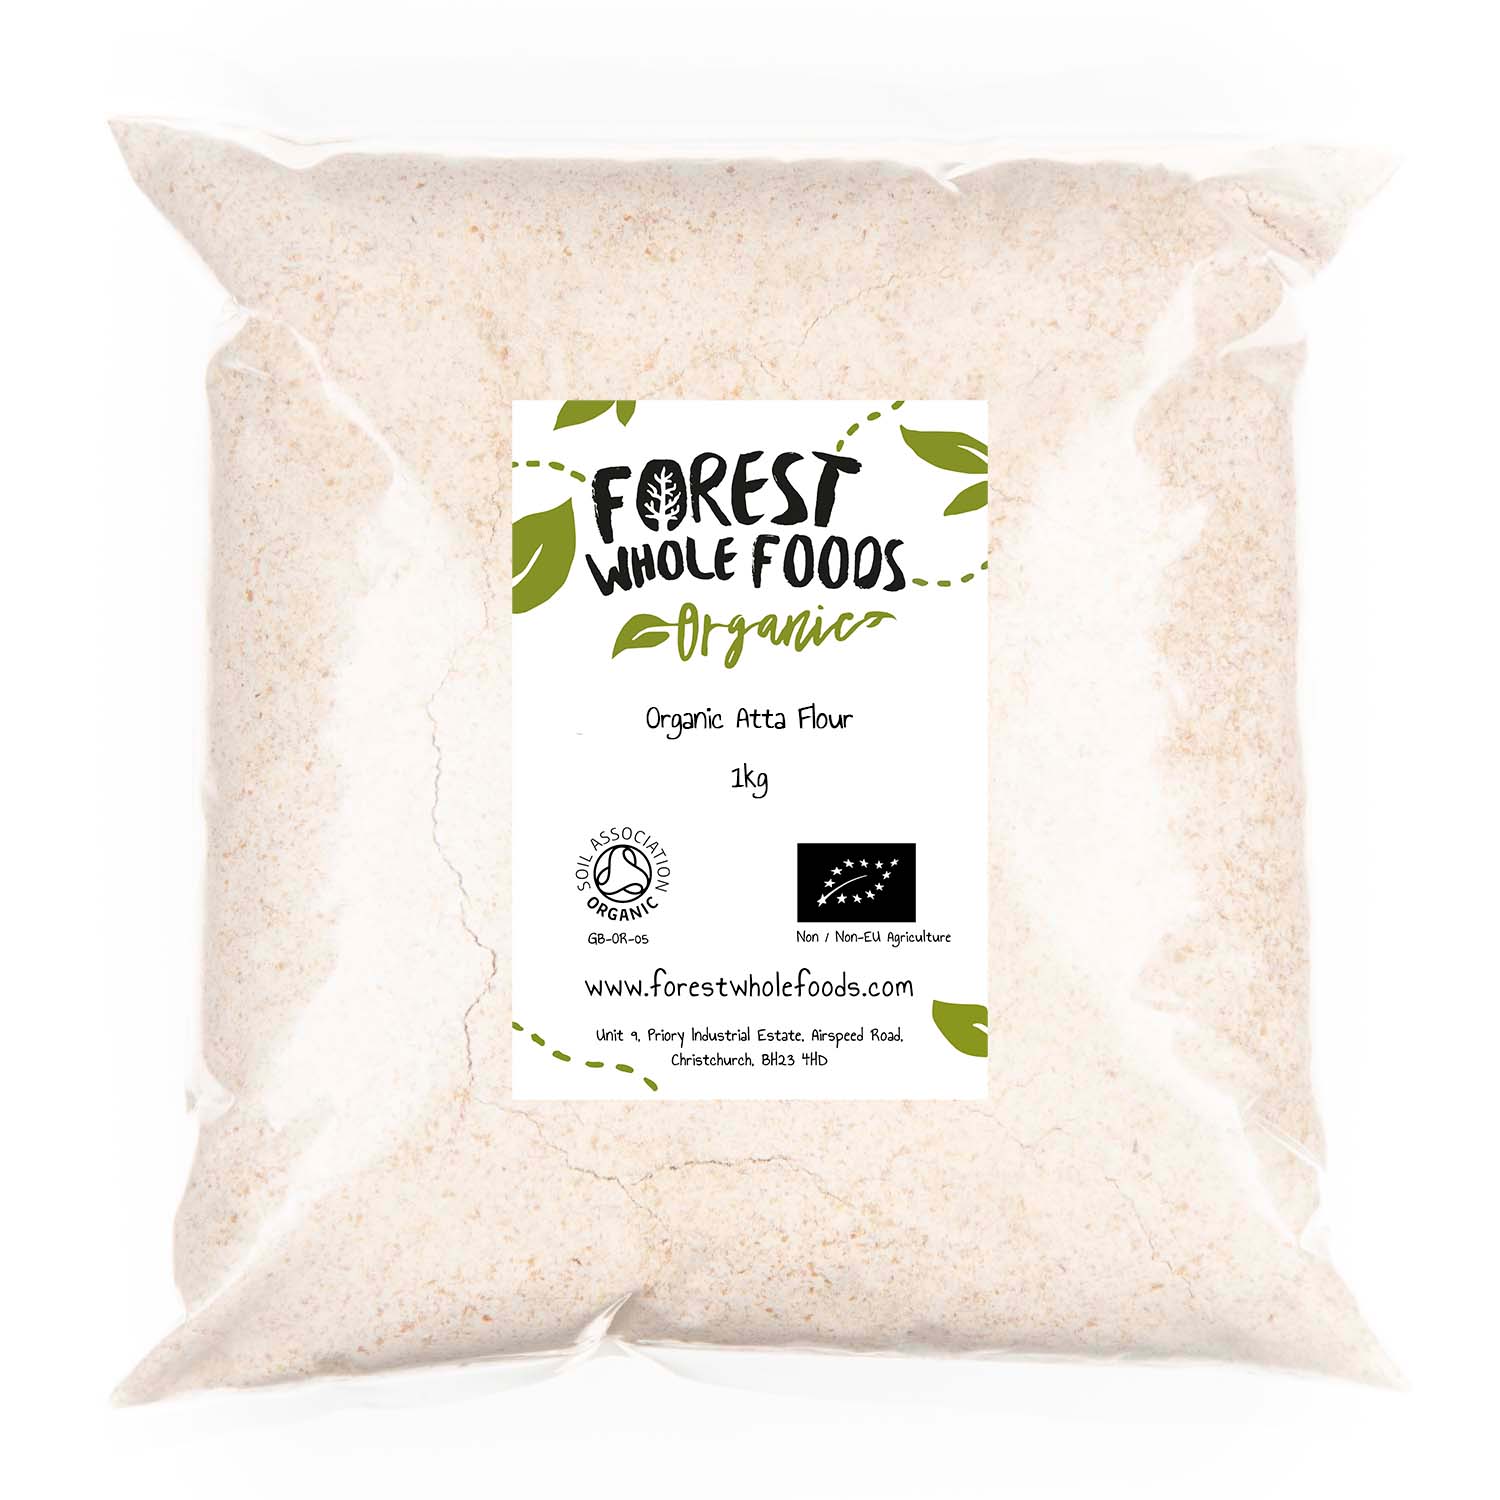 Organic Atta Flour 1kg